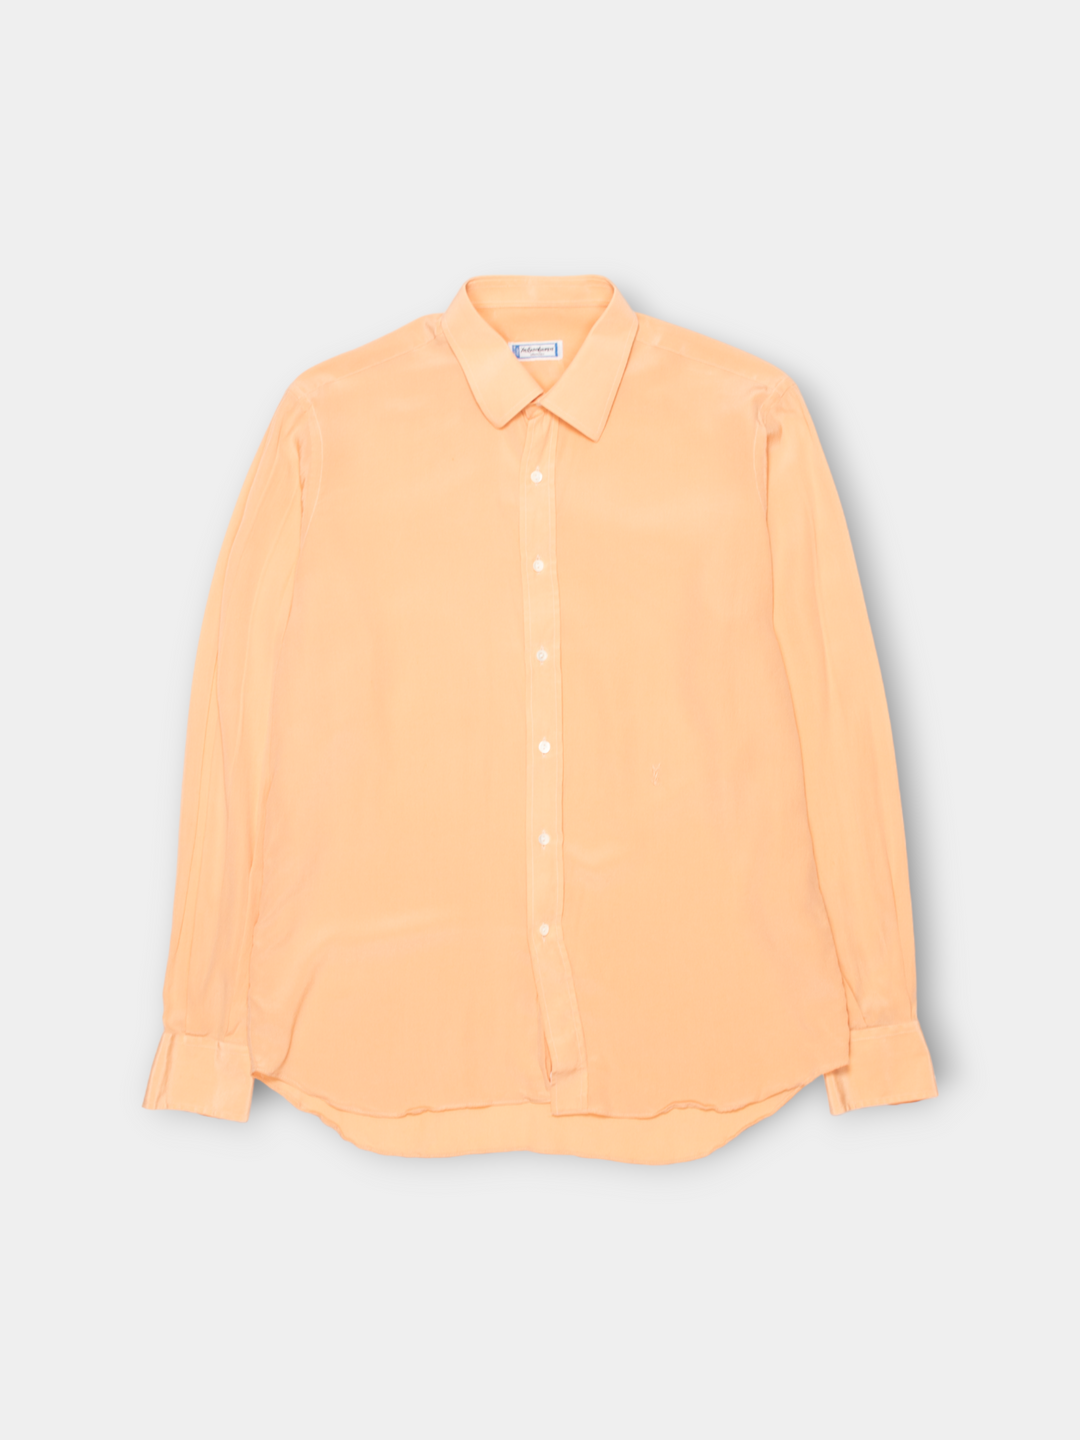 90s Yves Saint Laurent Light Shirt (M)